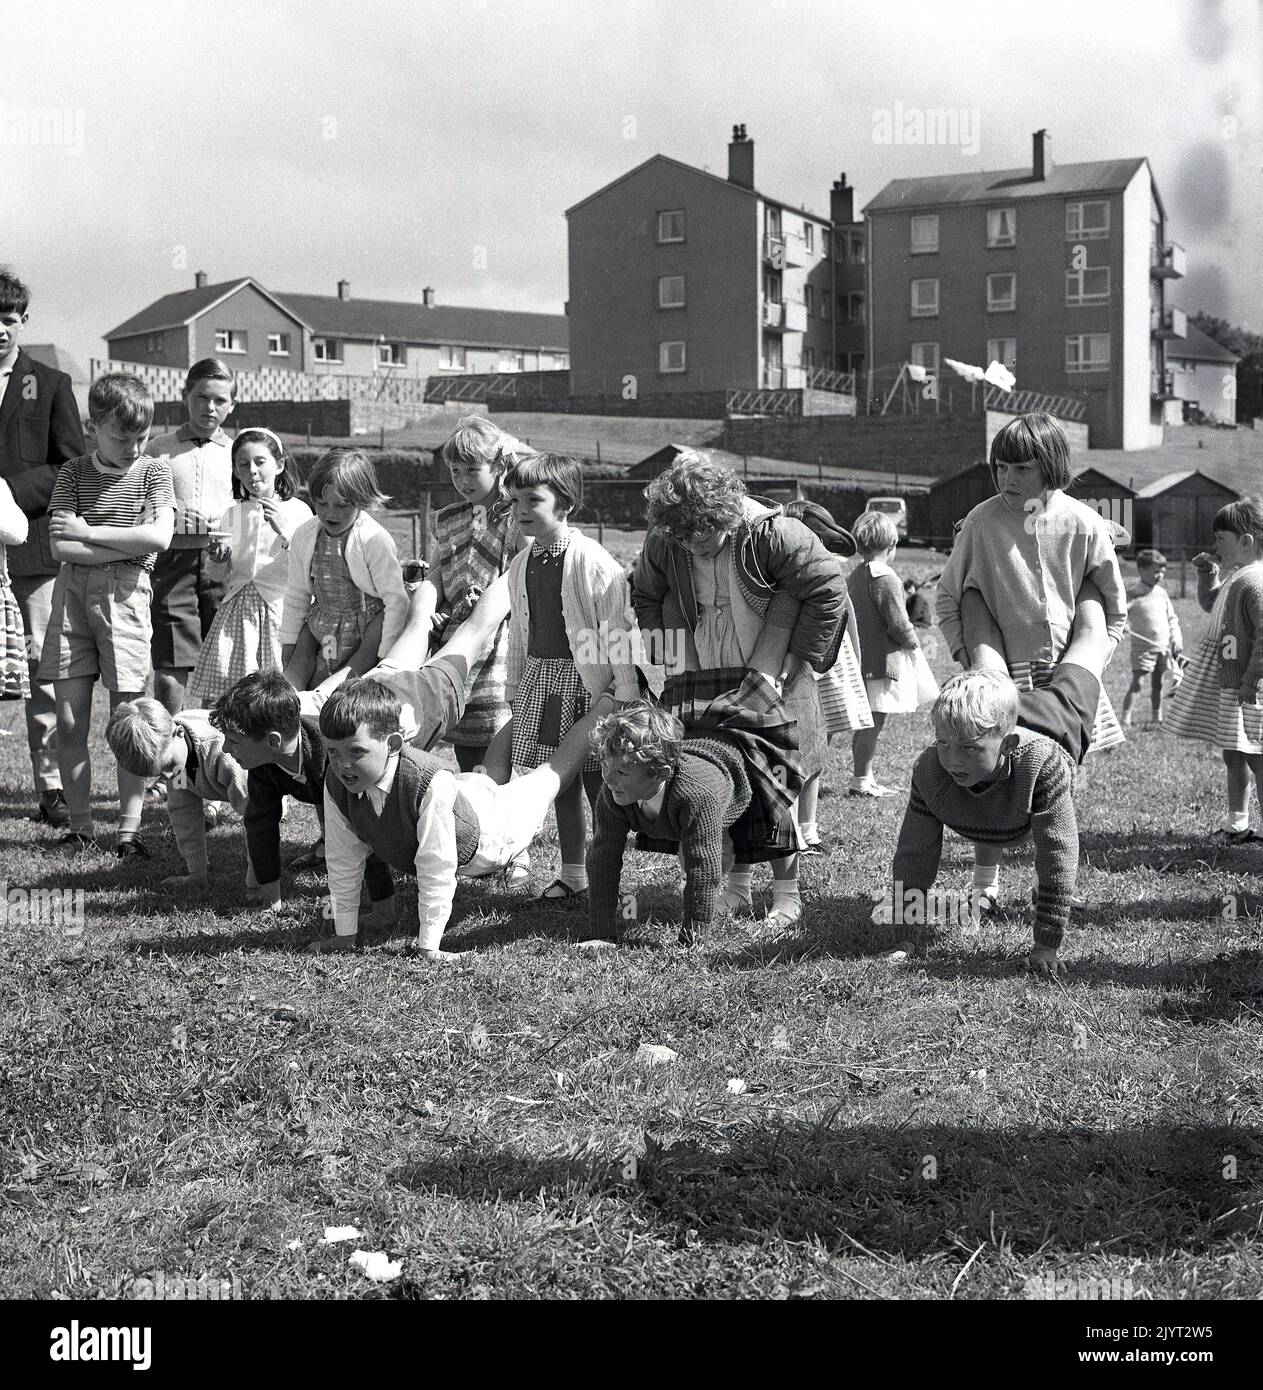 1965, historique, n. queensferry gala jour, les enfants prêts à commencer une activité amusante, une course de roussets à l'extérieur sur l'herbe dans un champ d'un domaine de logement à North Queensferry, Fife, Écosse, Royaume-Uni, les jeunes filles braves tenant les jambes des garçons! Banque D'Images